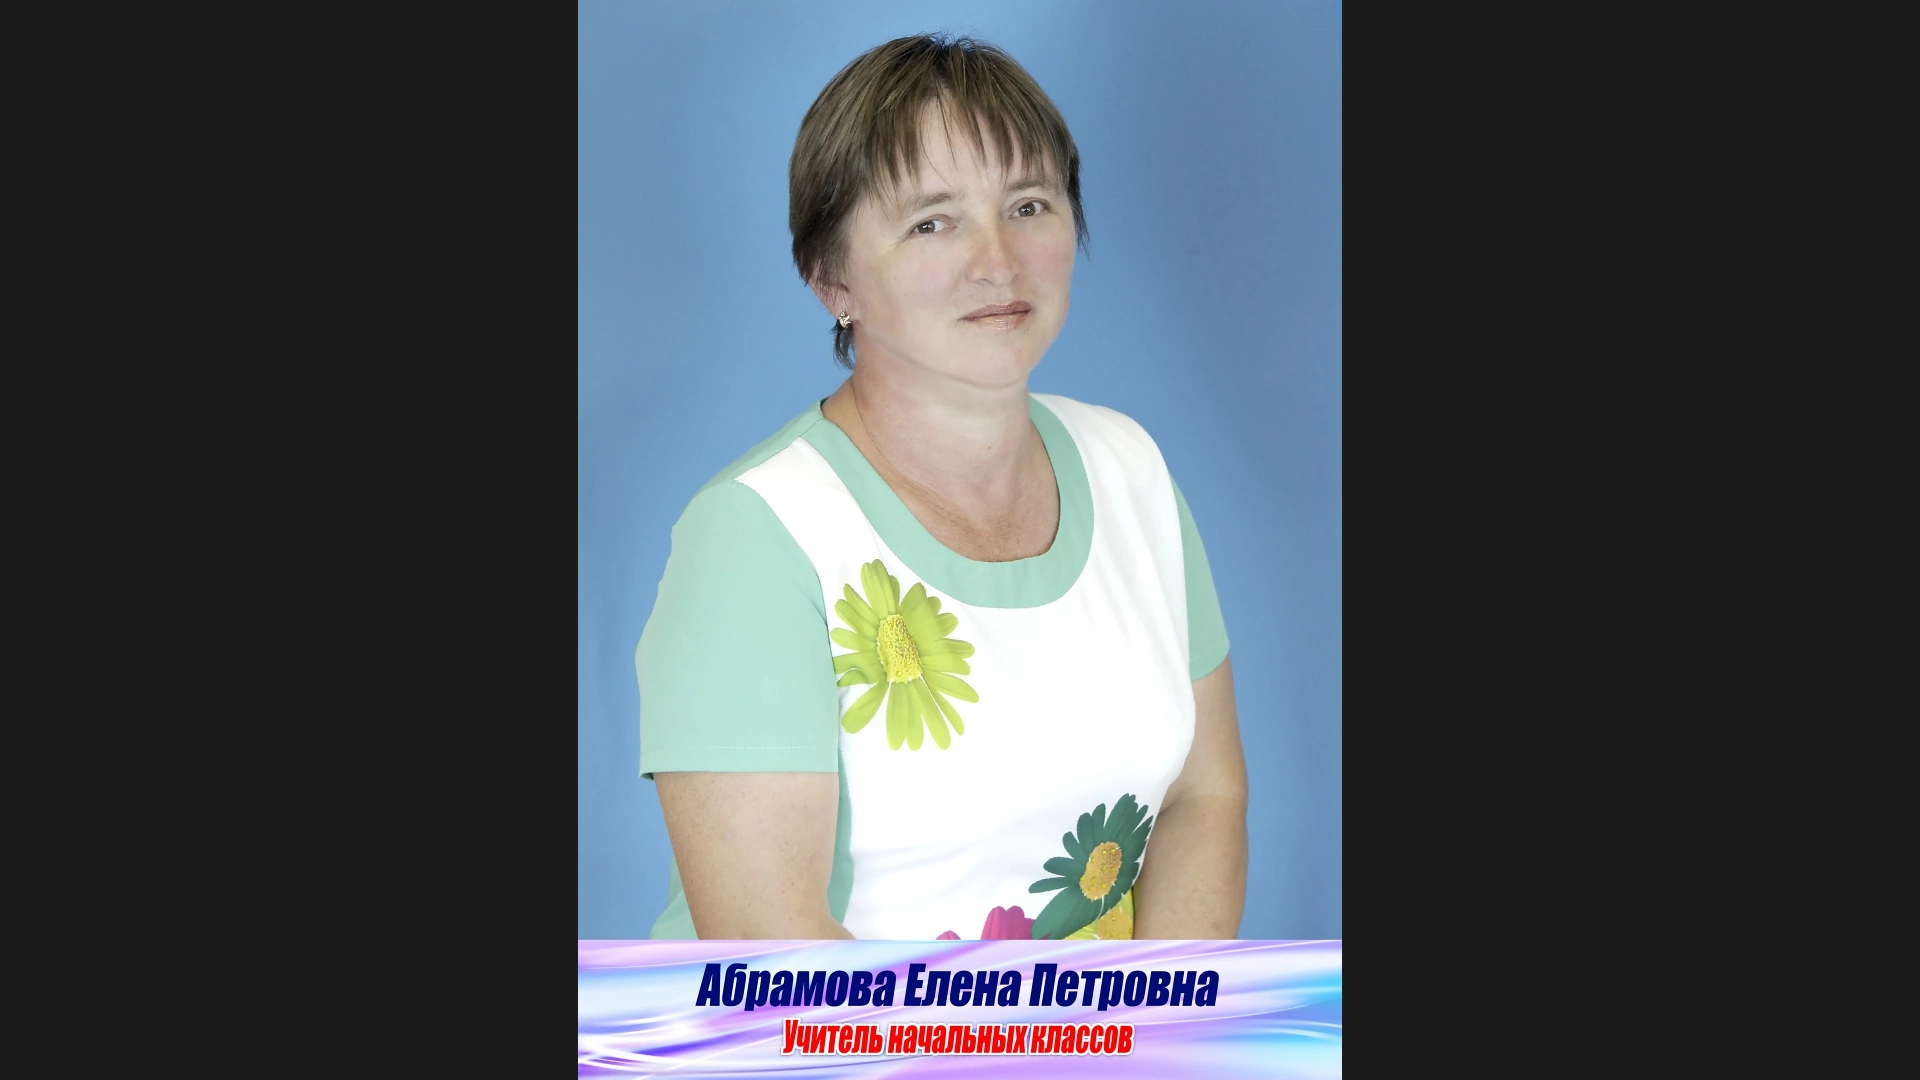 Абрамова Елена Петровна.